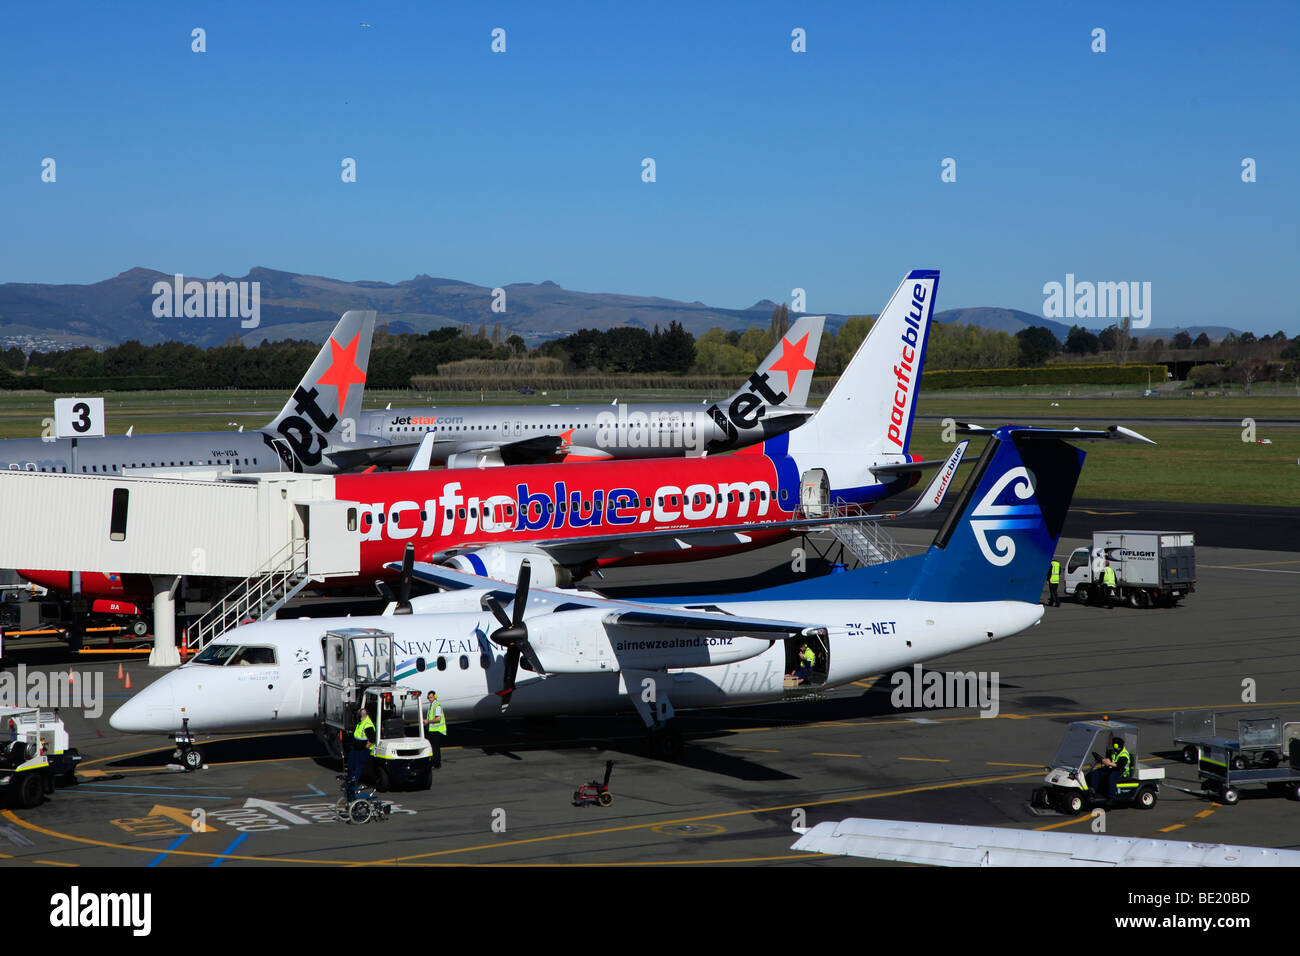 Jet Star, Pacific Blue Air New Zealand Link Fluggesellschaften an CHC Flughafen Christchurch, Canterbury, Südinsel, Neuseeland Stockfoto